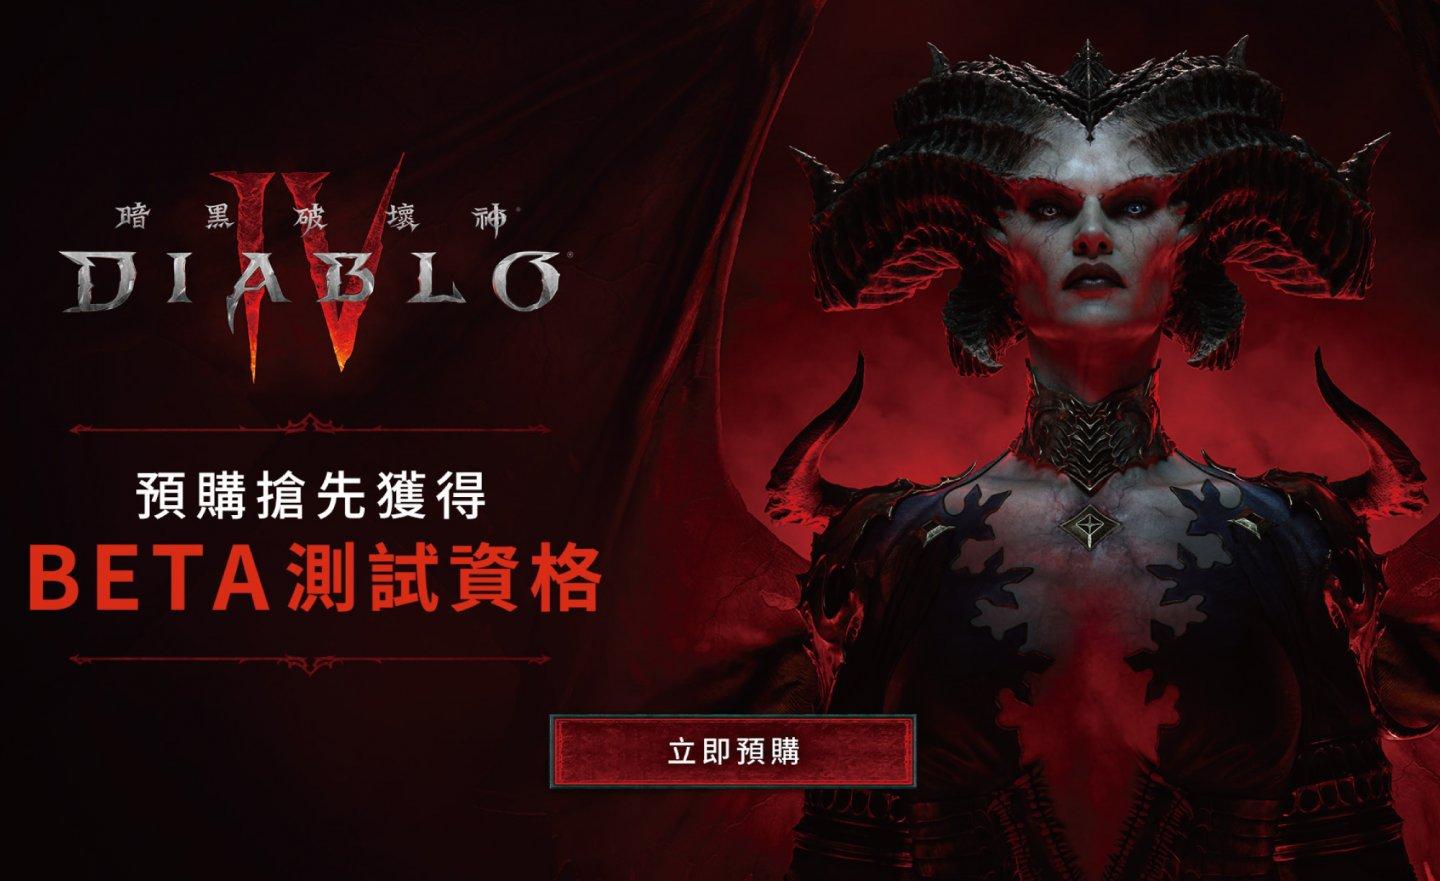 《Diablo IV 暗黑破壞神 4》確定 2023 年 6 月 6 日上市，預購玩家可參與 Beta 公測